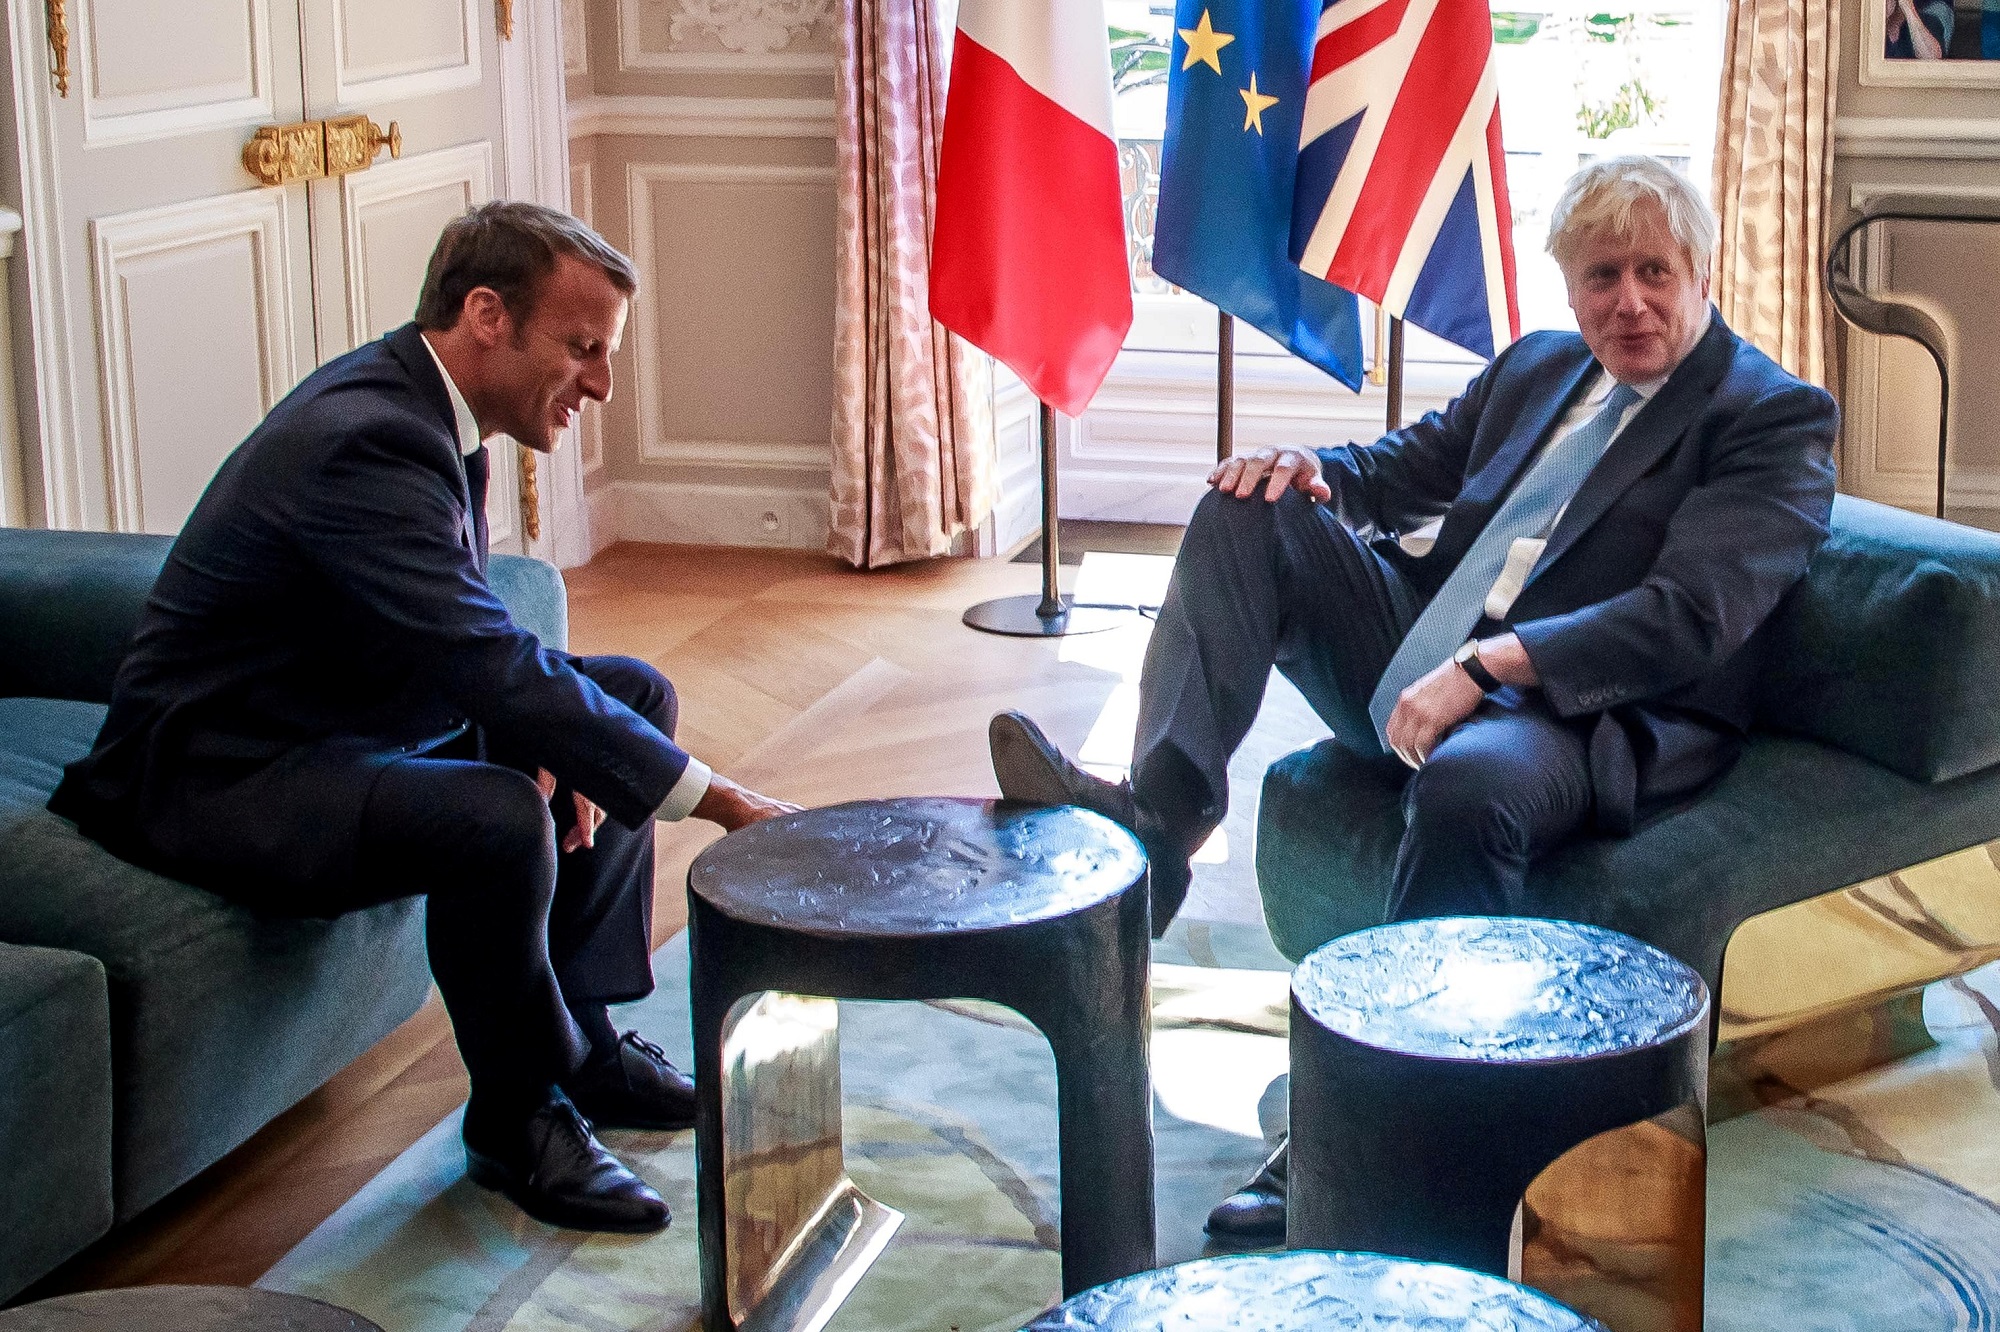 الرئيس الفرنسي إيمانويل ماكرون (يسار) ورئيس الوزراء البريطاني بوريس جونسون خلال اجتماع في قصر الإليزيه في فرنسا. 22 أغسطس 2019. كريستوف بيتي تيسون / رويترز